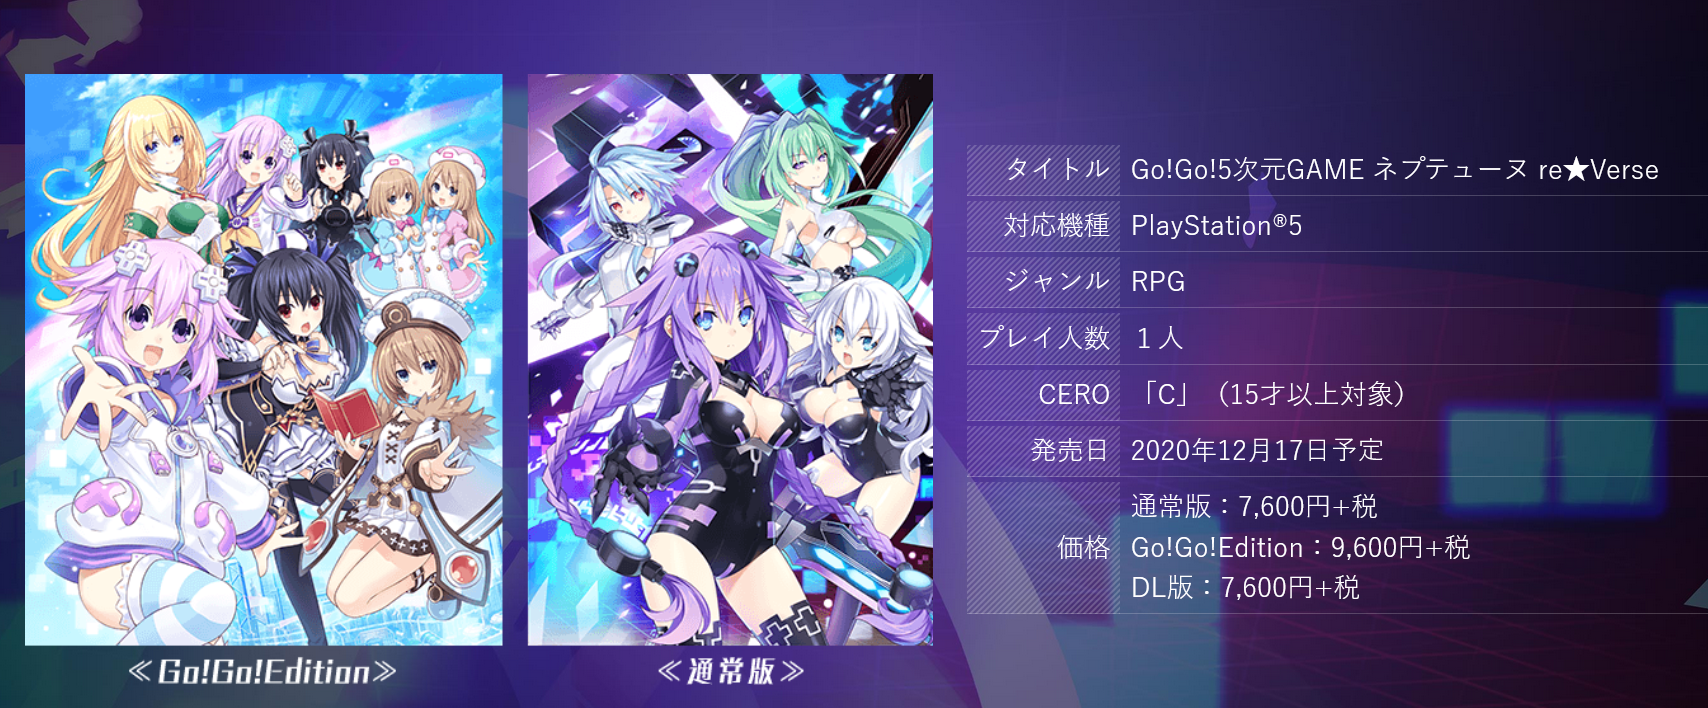 《Go!Go!5次元游戏 海王星re★Verse》官网上线 12月17日发售